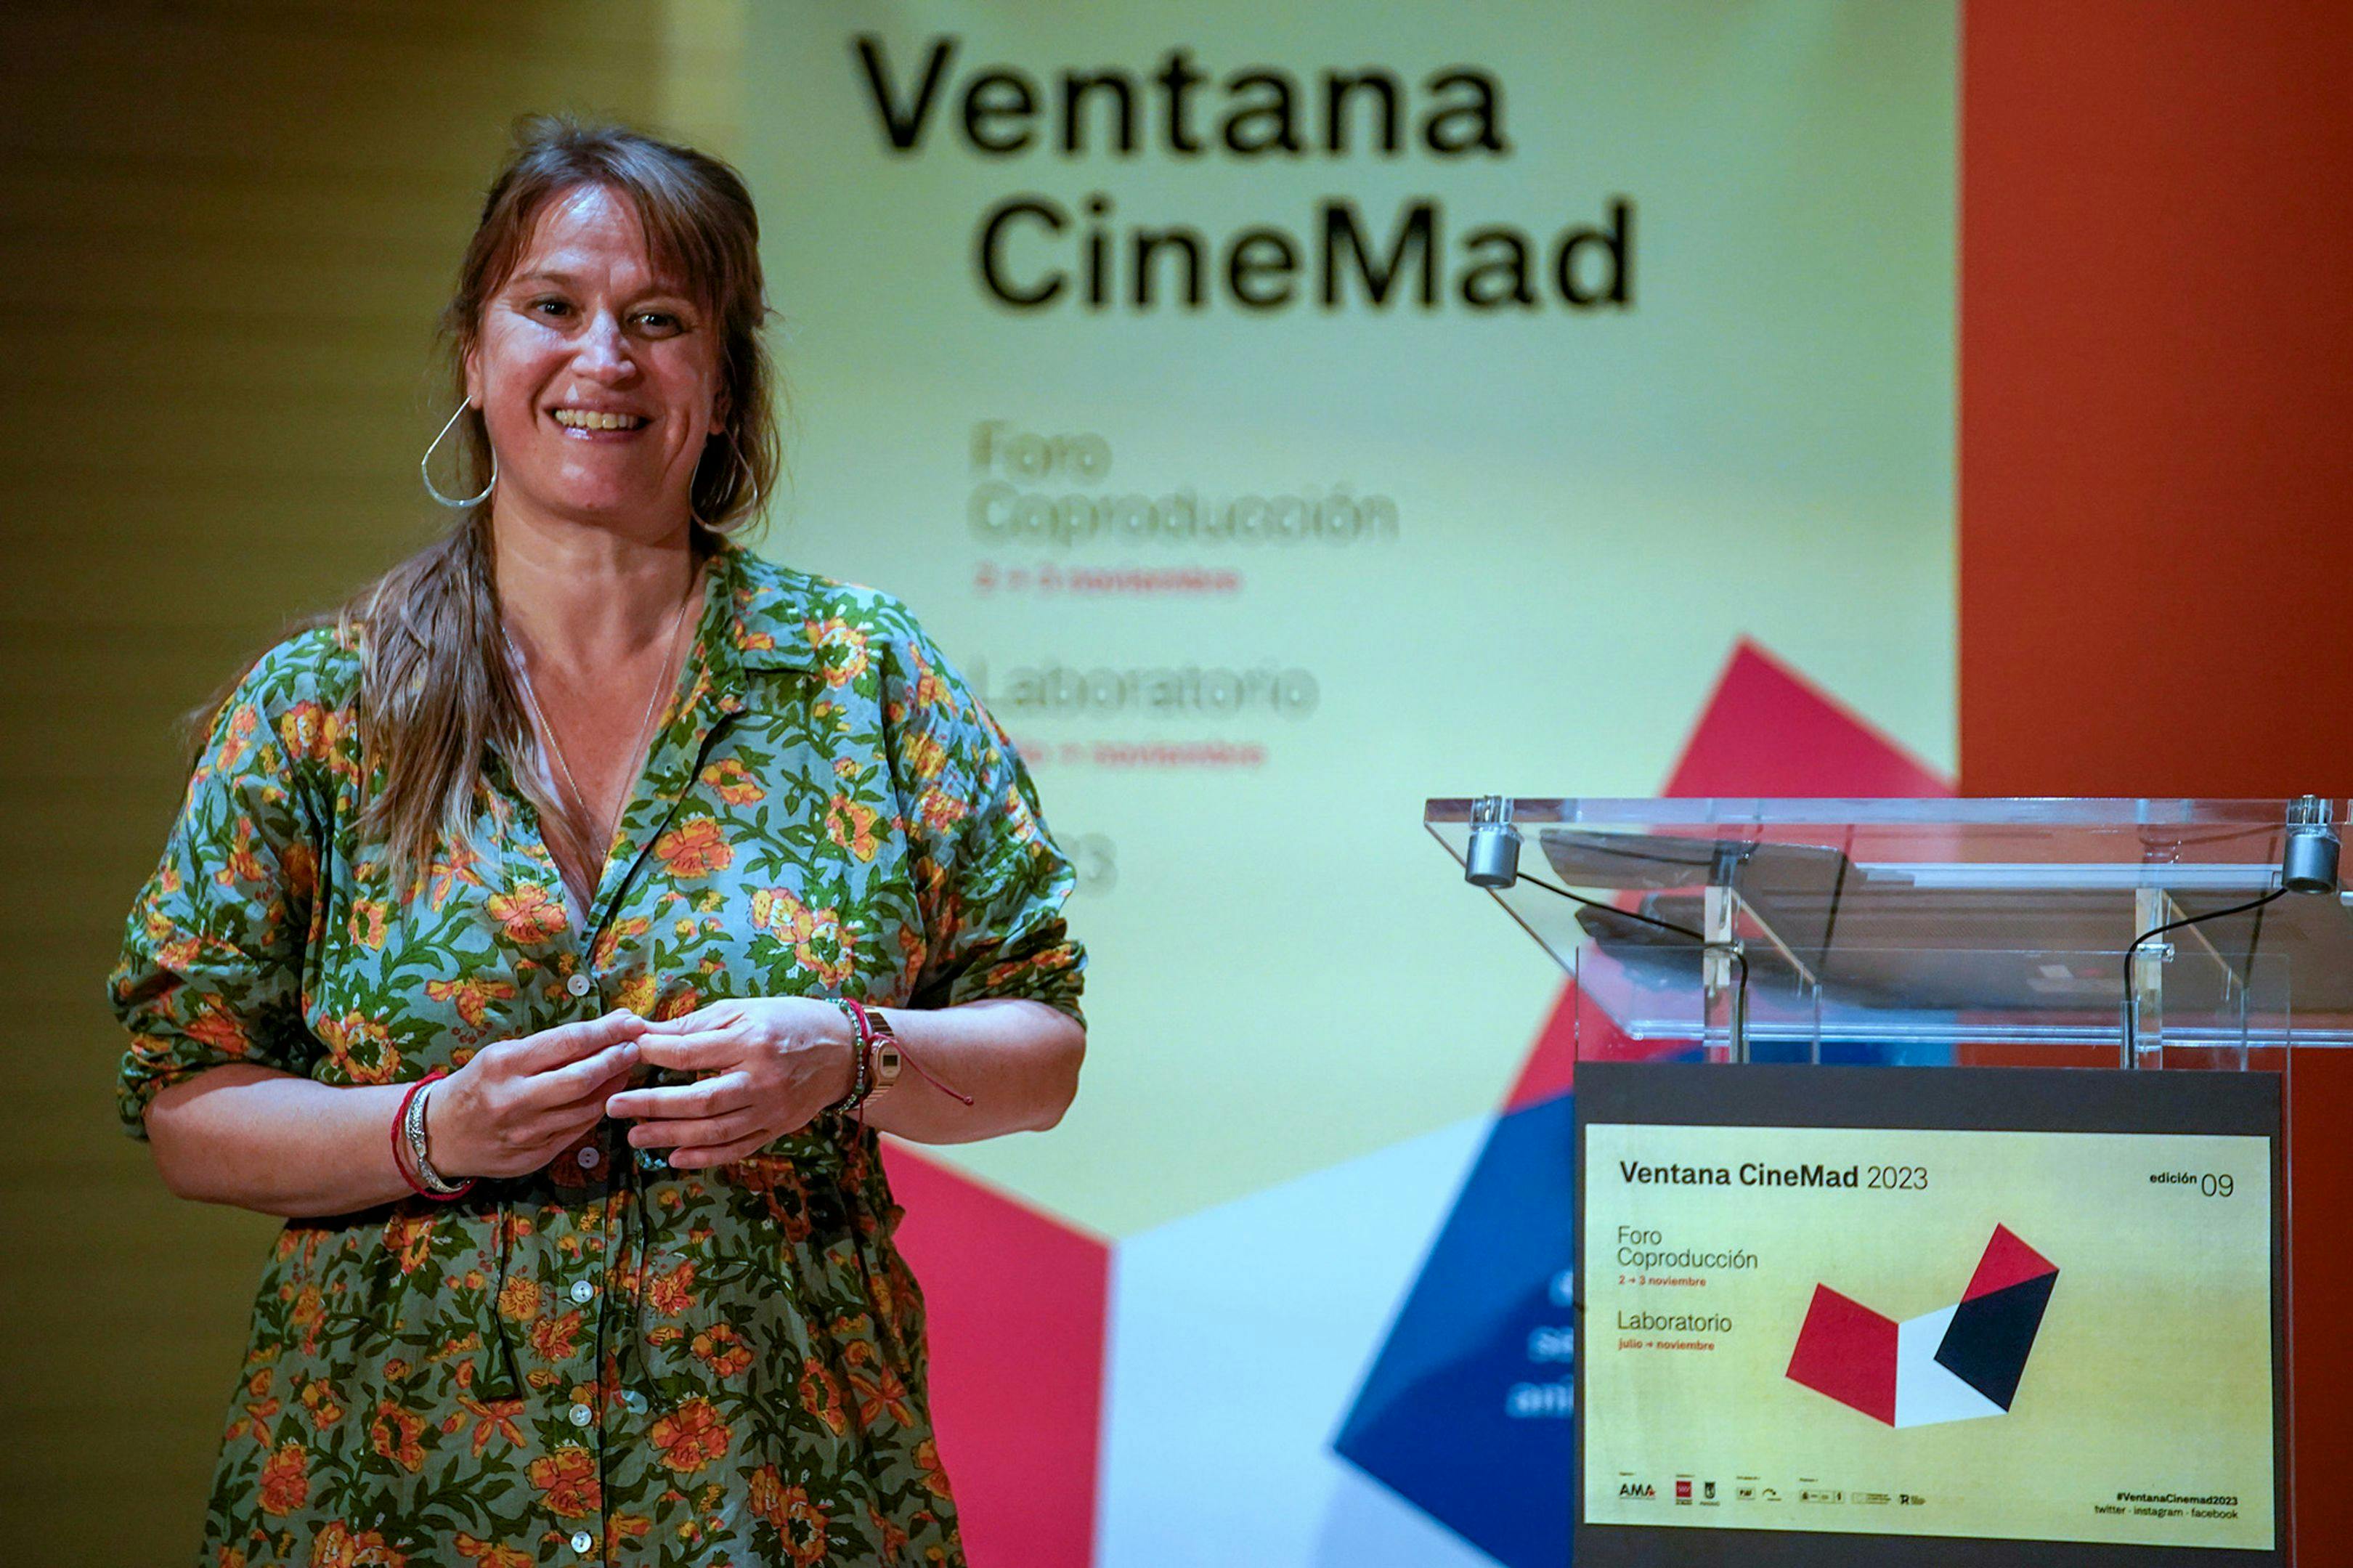 Antes de las jornadas de coproducción, Ventana CineMad llevó a cabo un laboratorio este verano